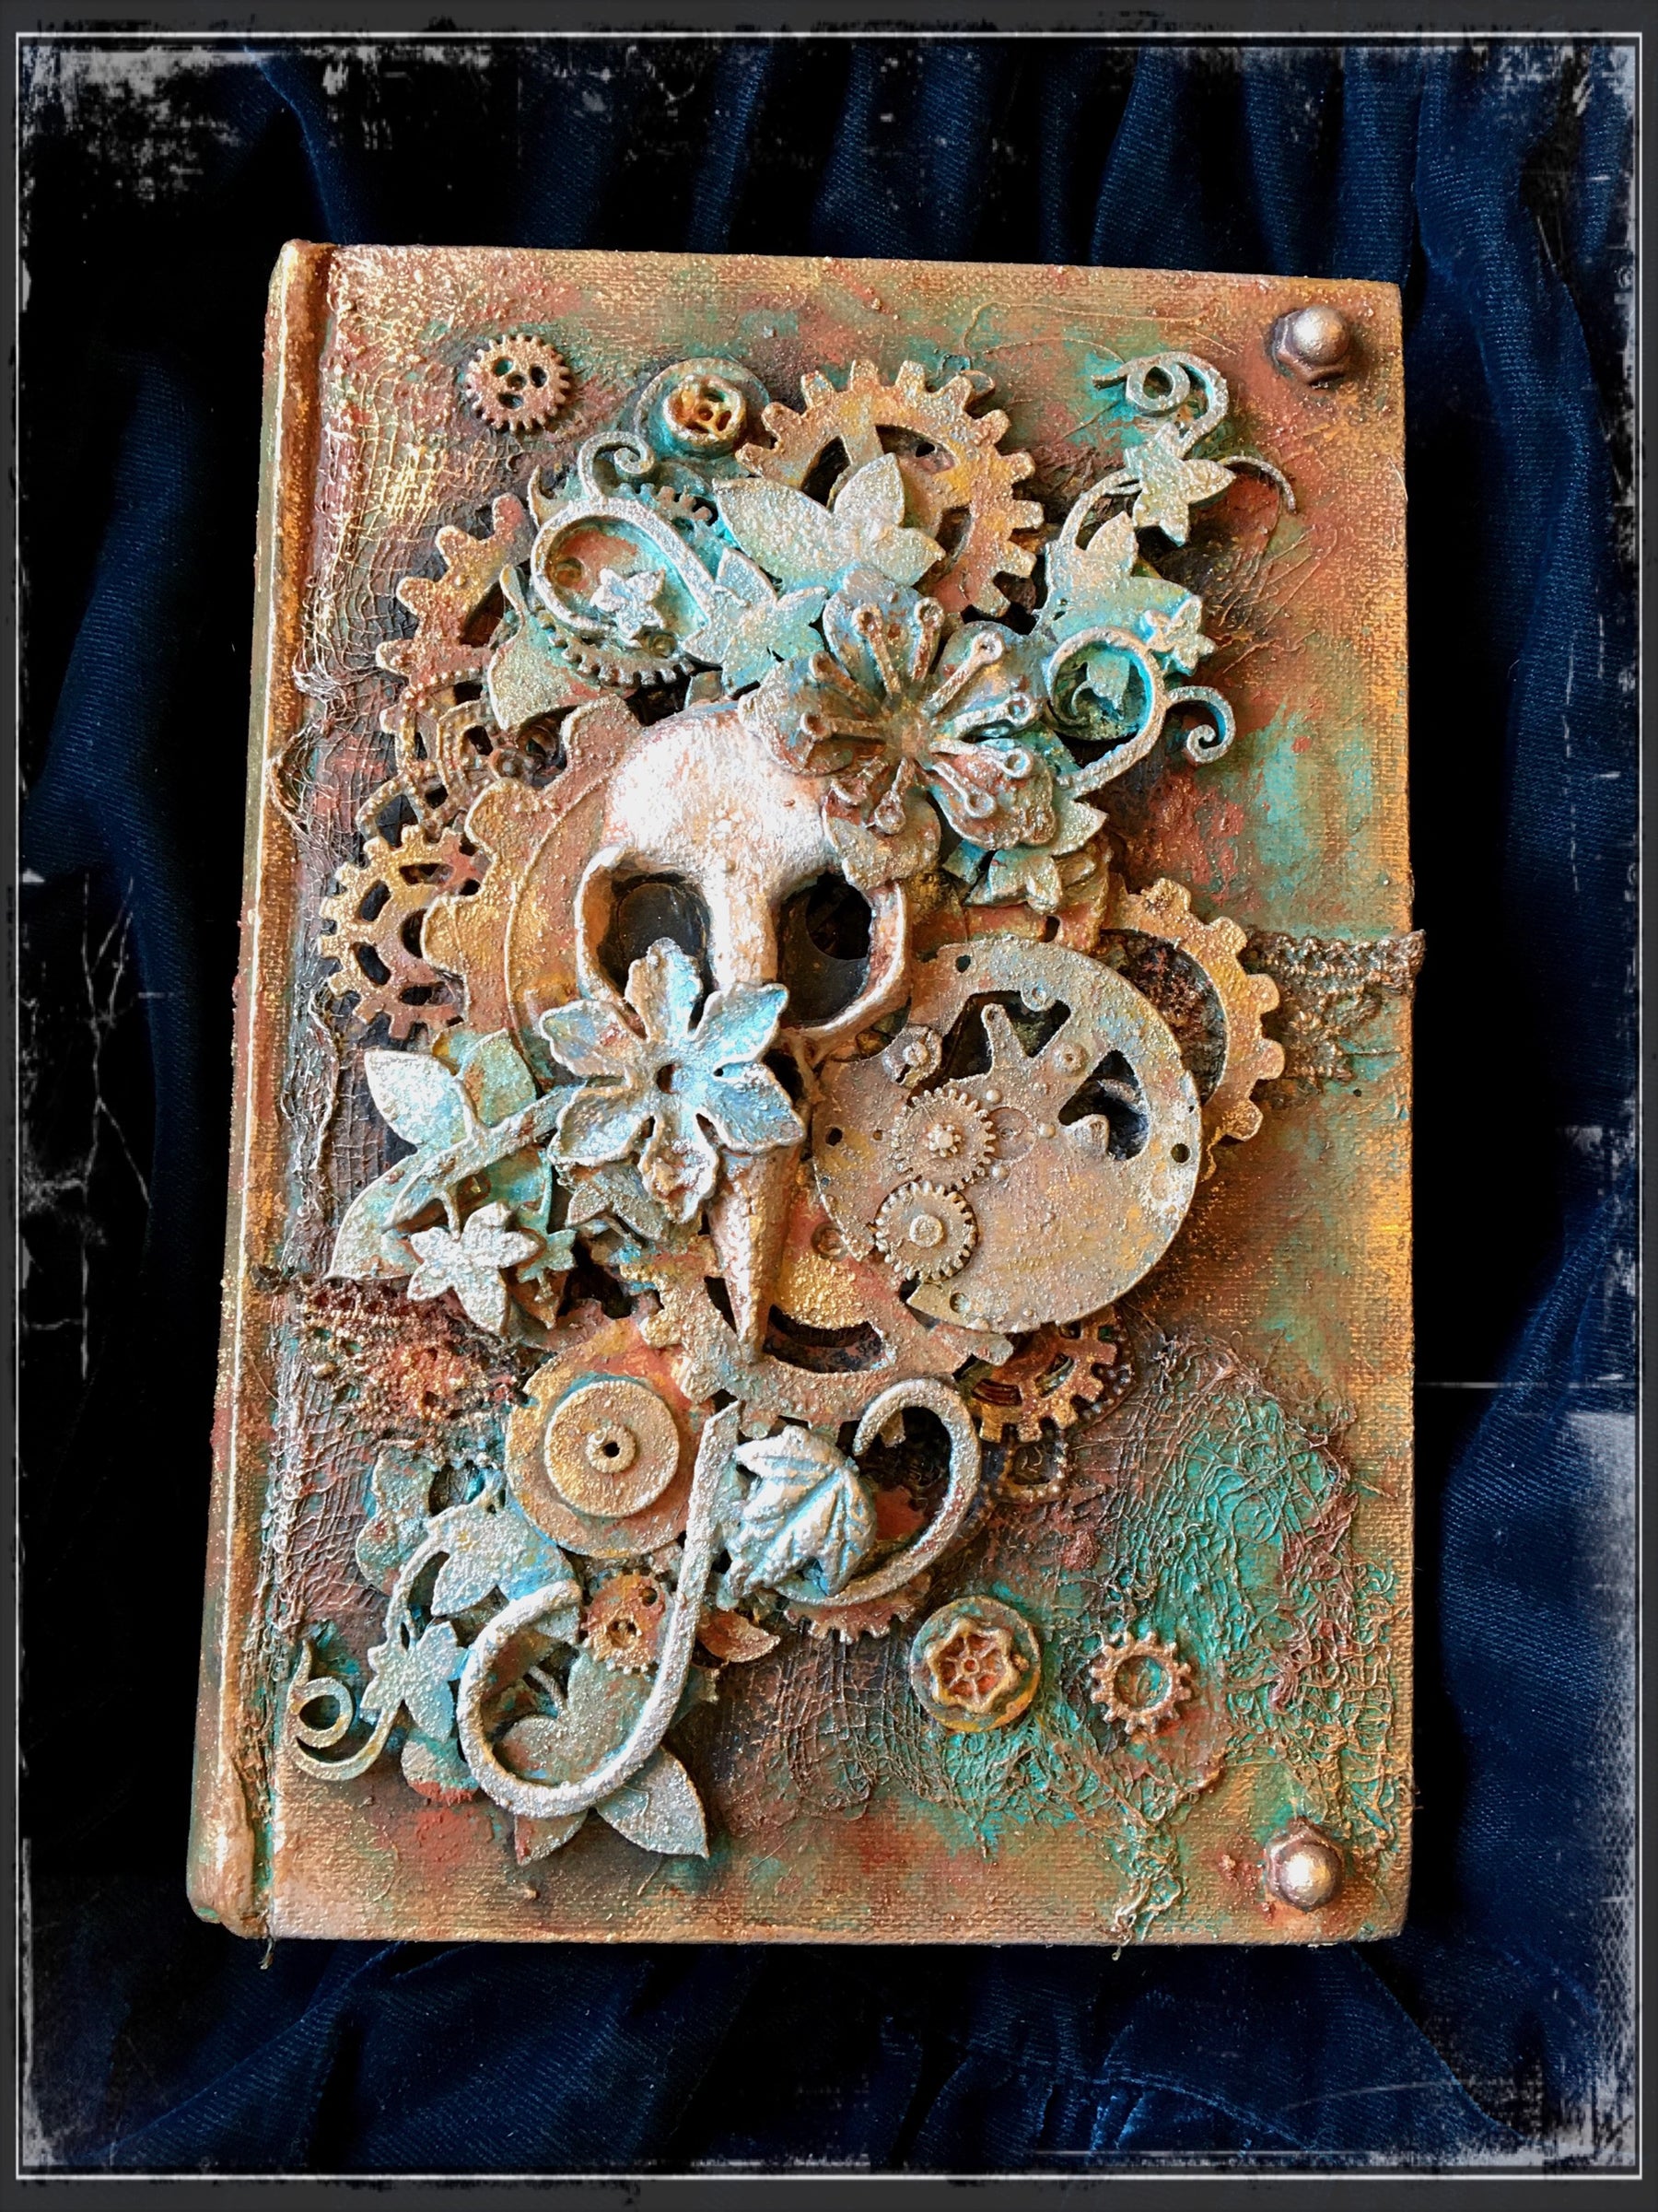 Rusty Art Journal: By Louise Crosbie